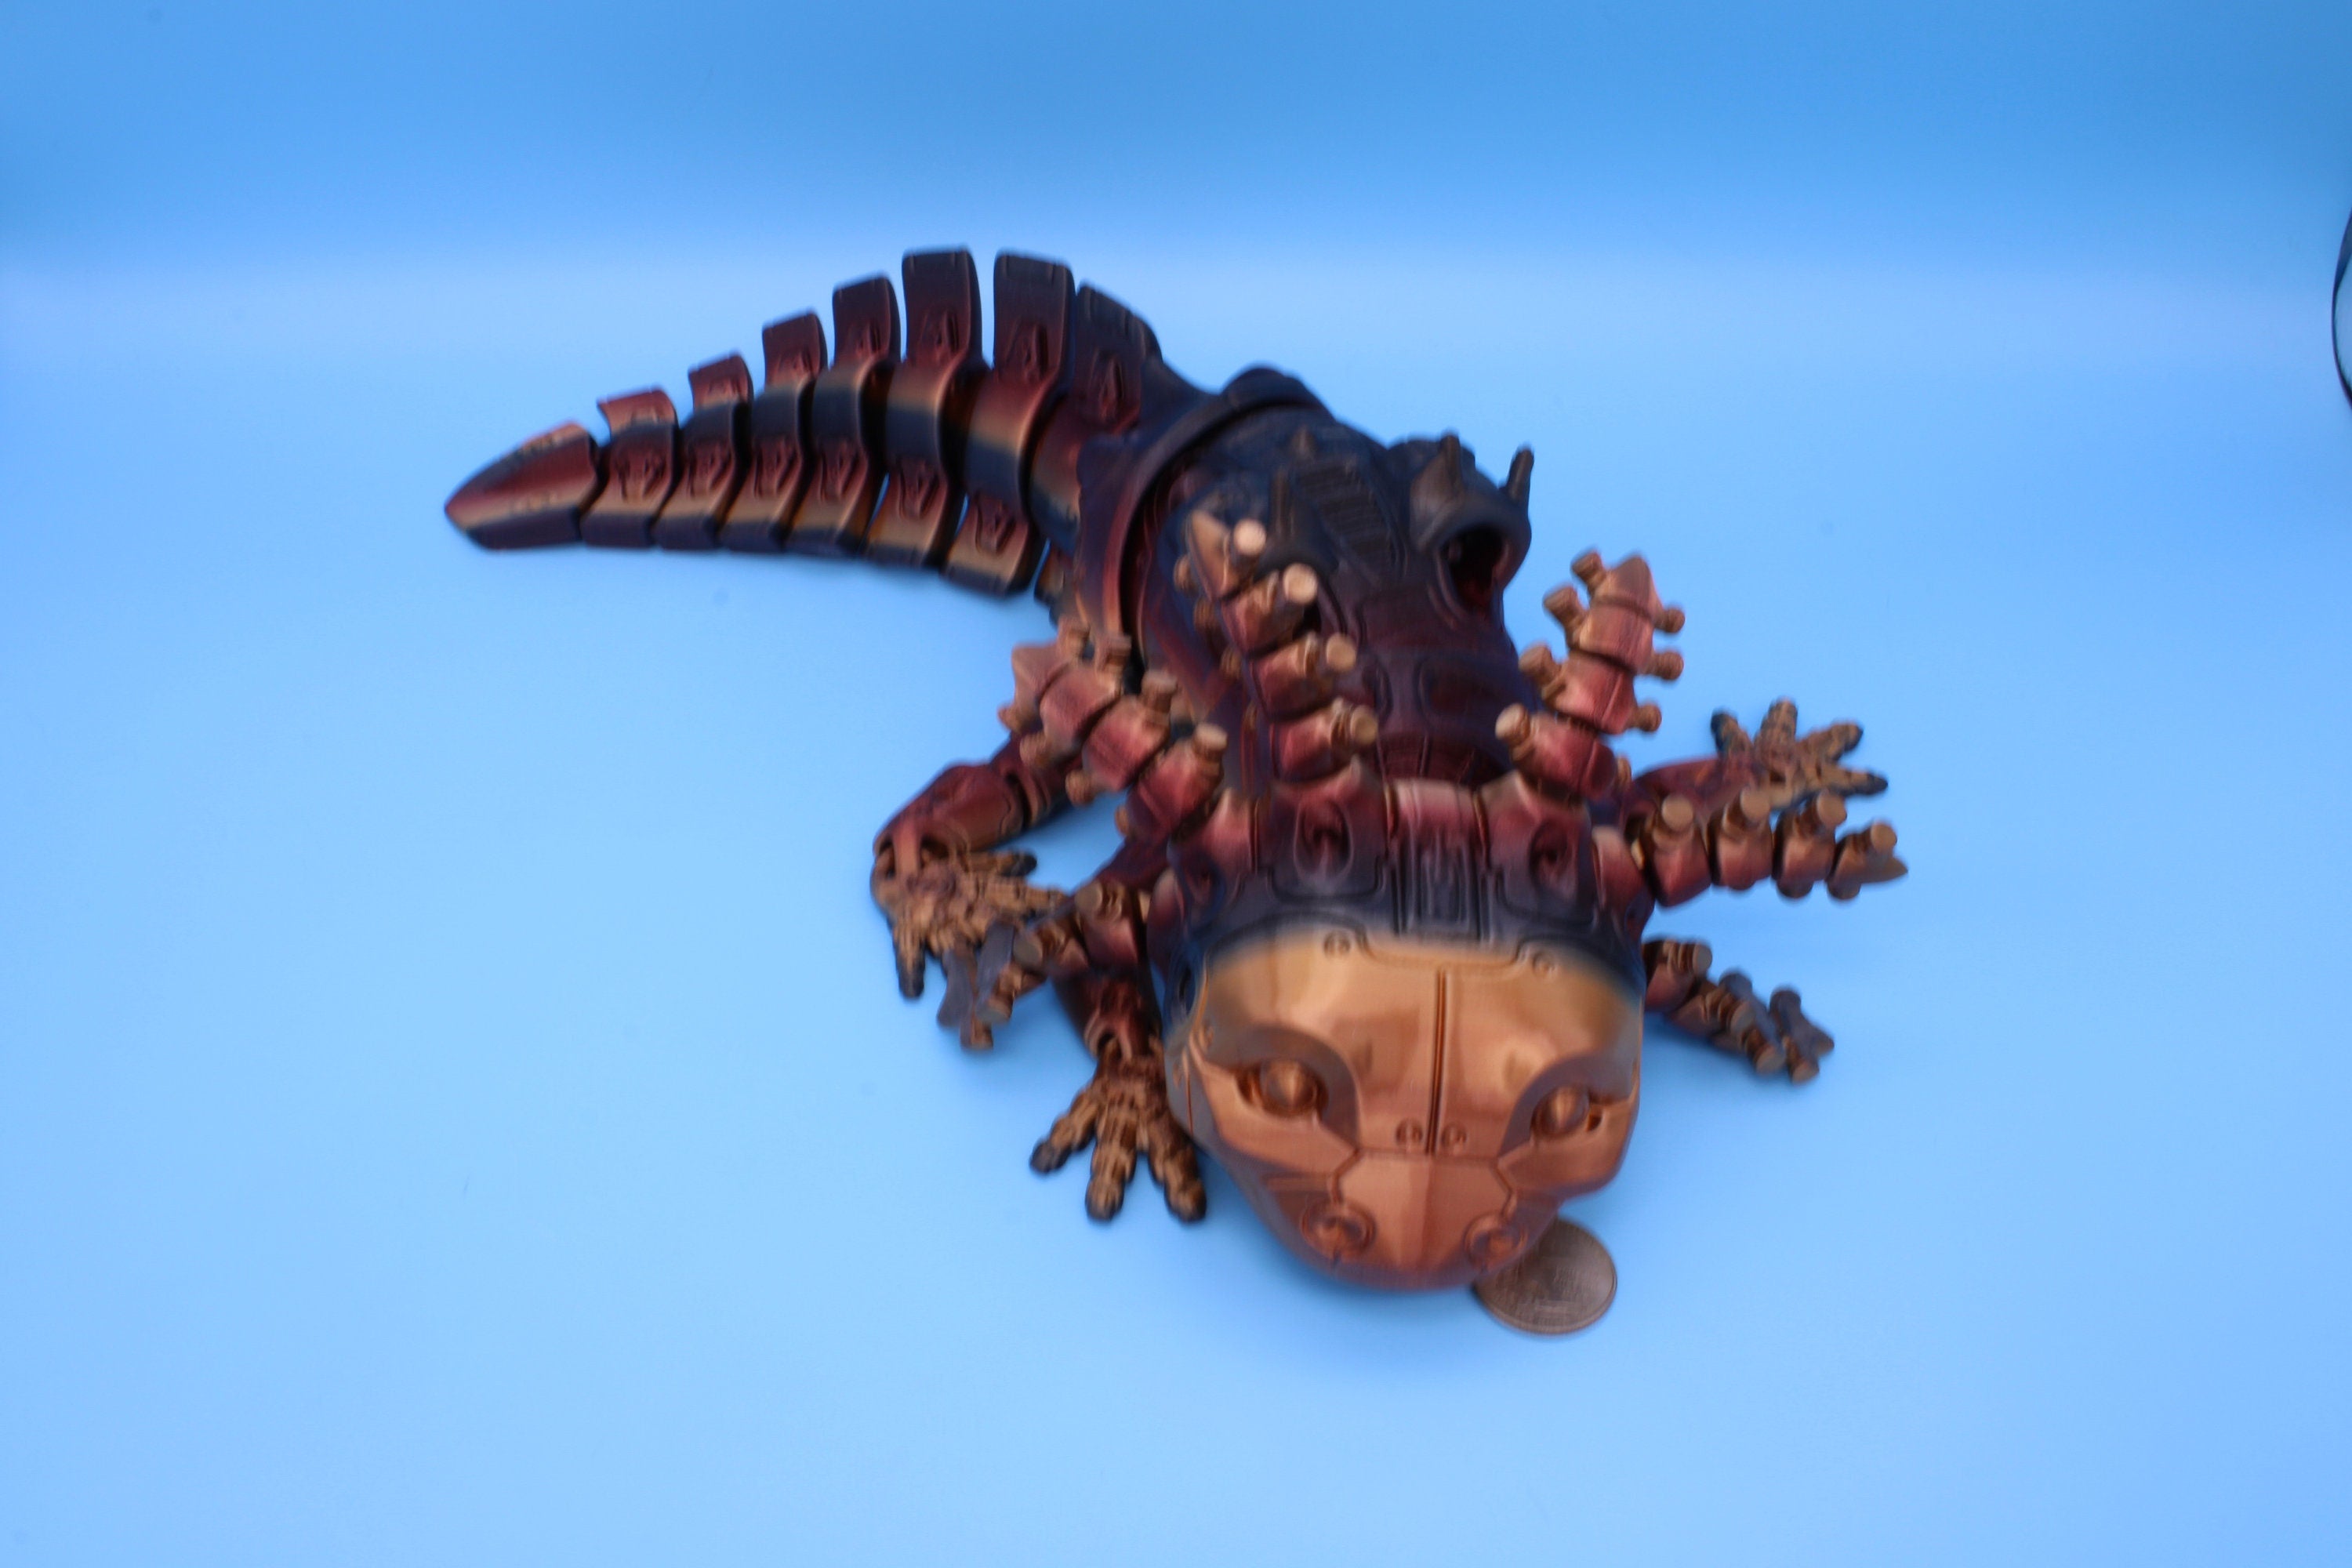 Robolotl the Robot Axolotl | 15 Inches!